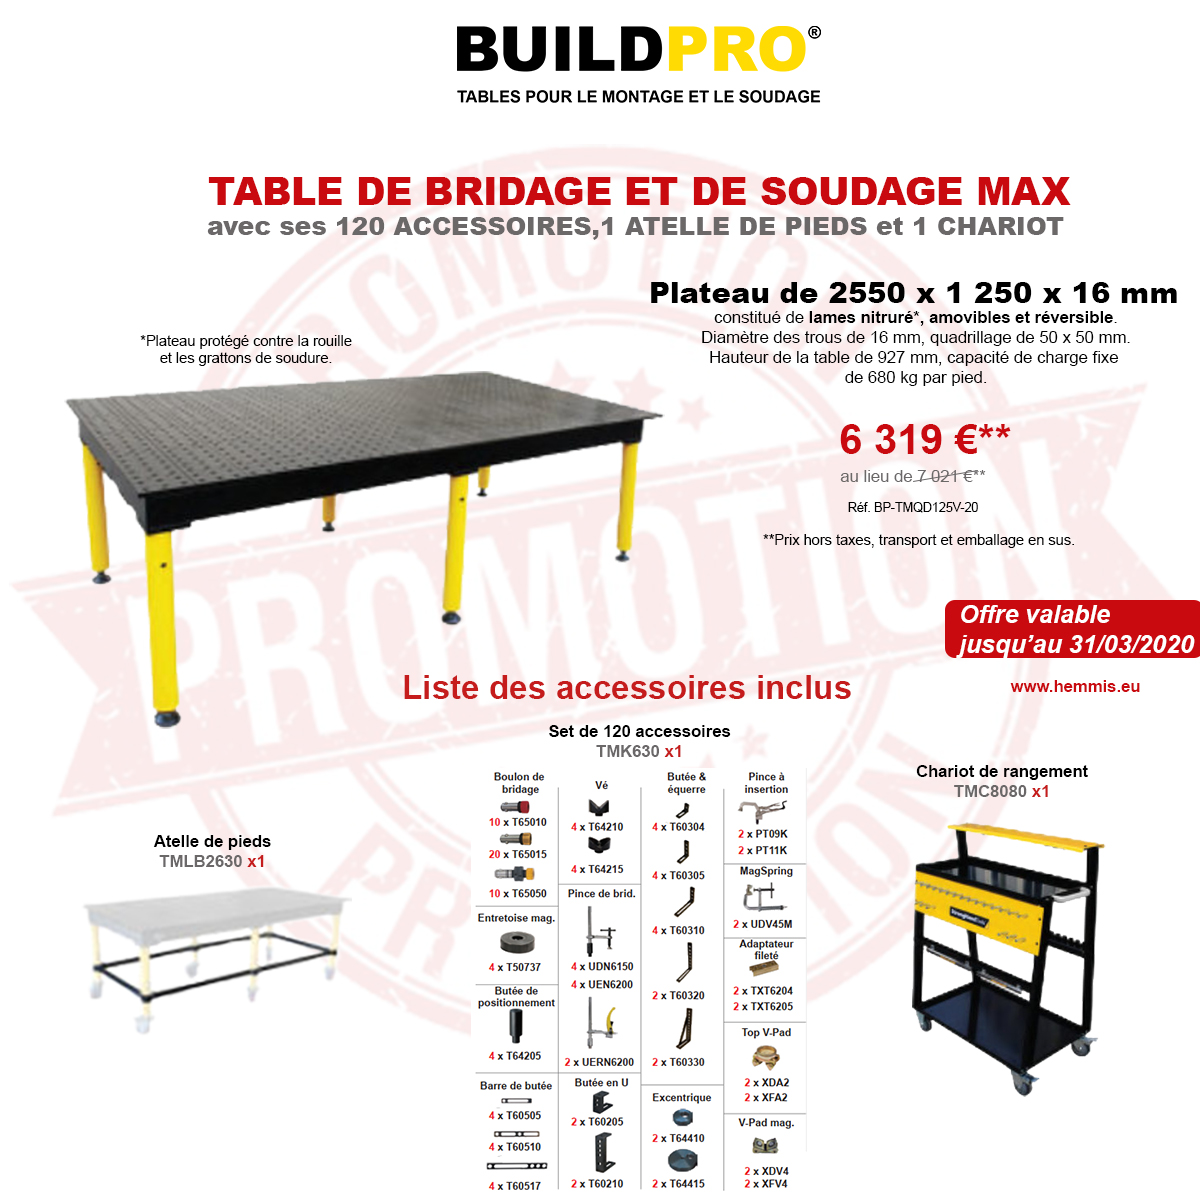 Tables de bridage et de soudage BuildPro